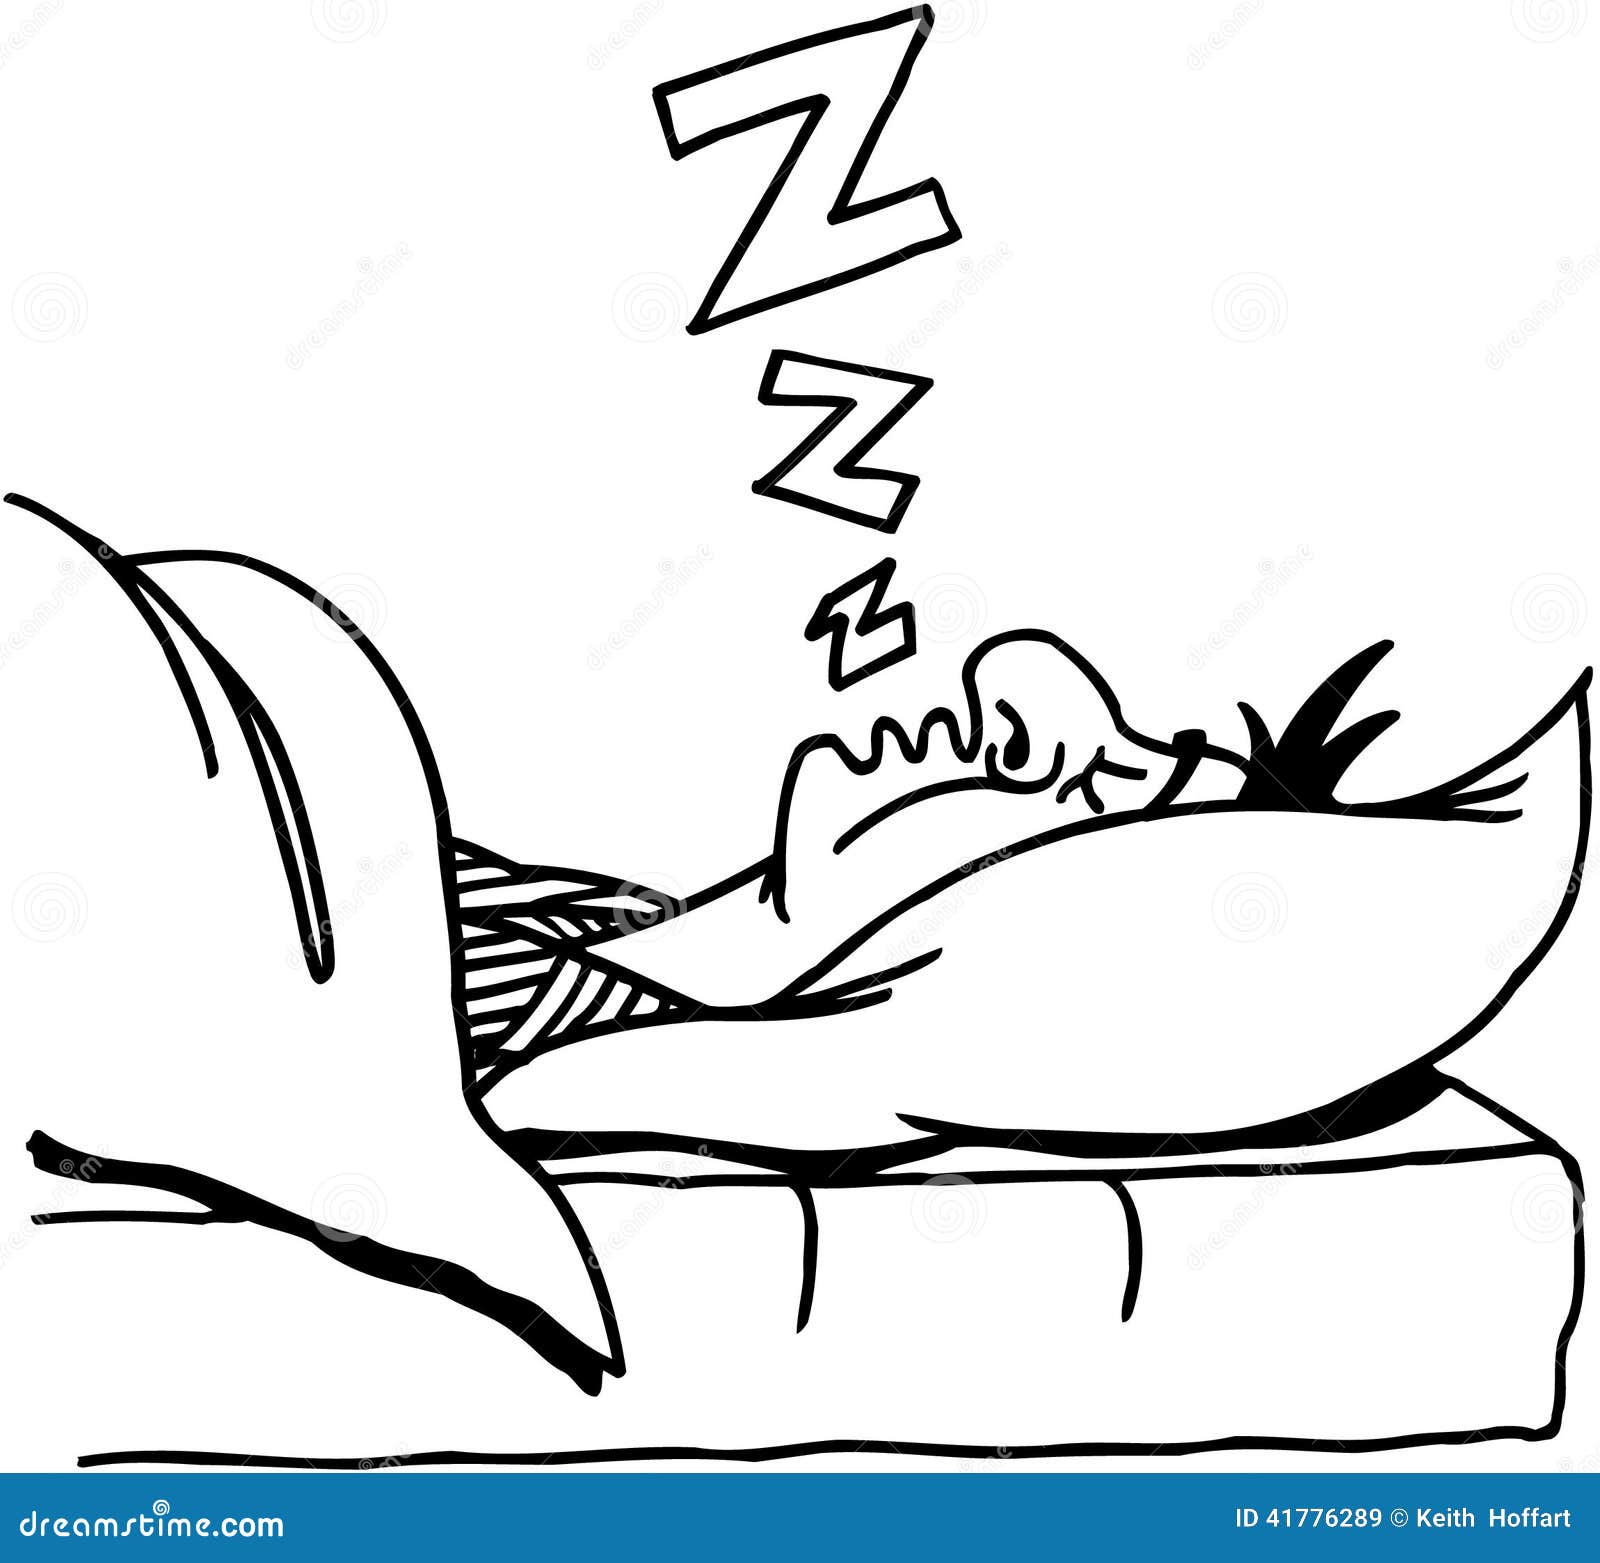 Man Snoring Cartoon Stock Illustrations – 296 Man Snoring Cartoon Stock  Illustrations, Vectors & Clipart - Dreamstime